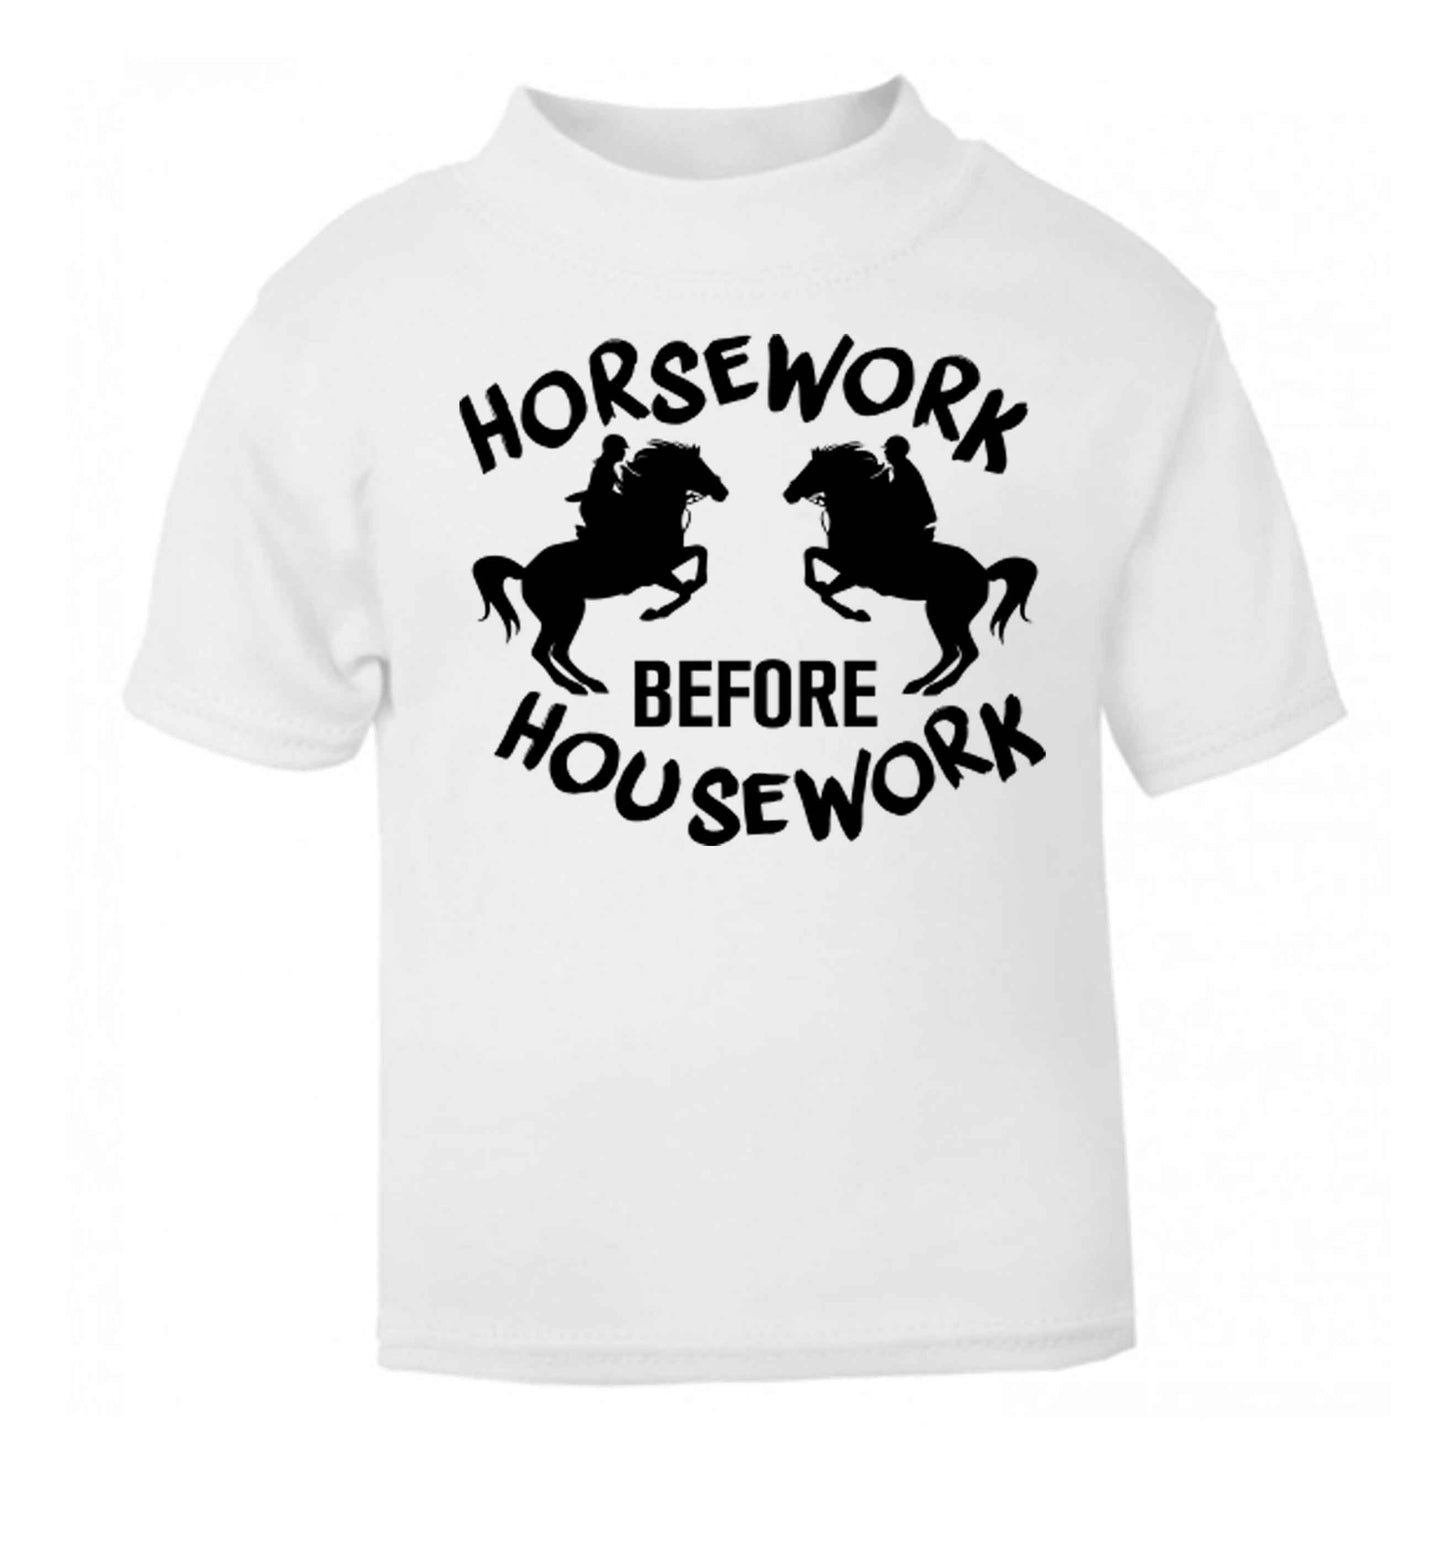 Horsework before housework white baby toddler Tshirt 2 Years